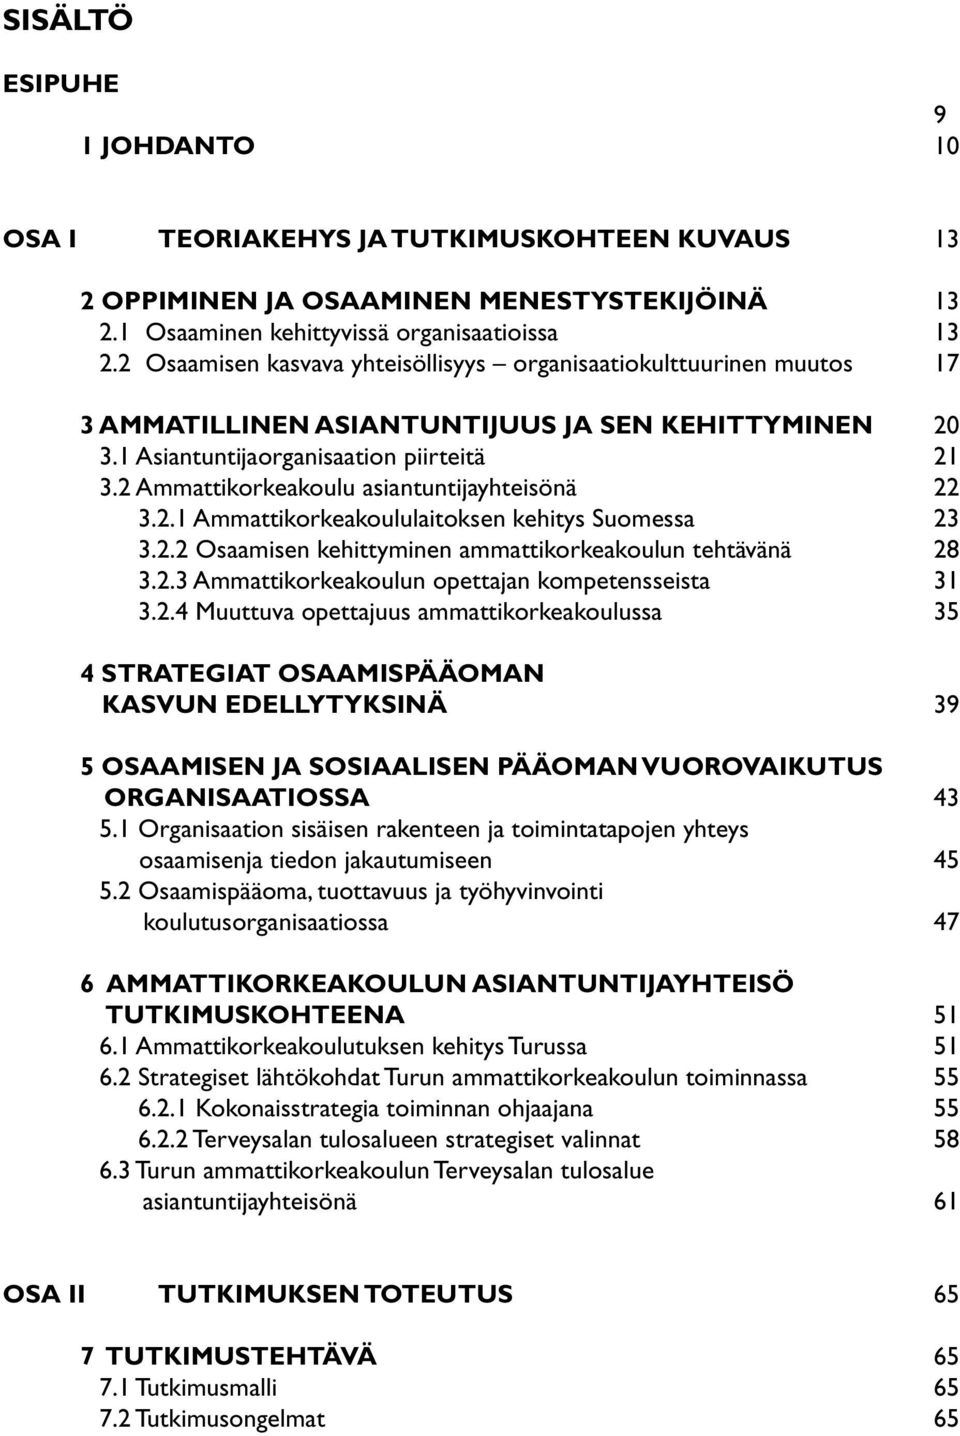 2 Ammattikorkeakoulu asiantuntijayhteisönä 22 3.2.1 Ammattikorkeakoululaitoksen kehitys Suomessa 23 3.2.2 Osaamisen kehittyminen ammattikorkeakoulun tehtävänä 28 3.2.3 Ammattikorkeakoulun opettajan kompetensseista 31 3.